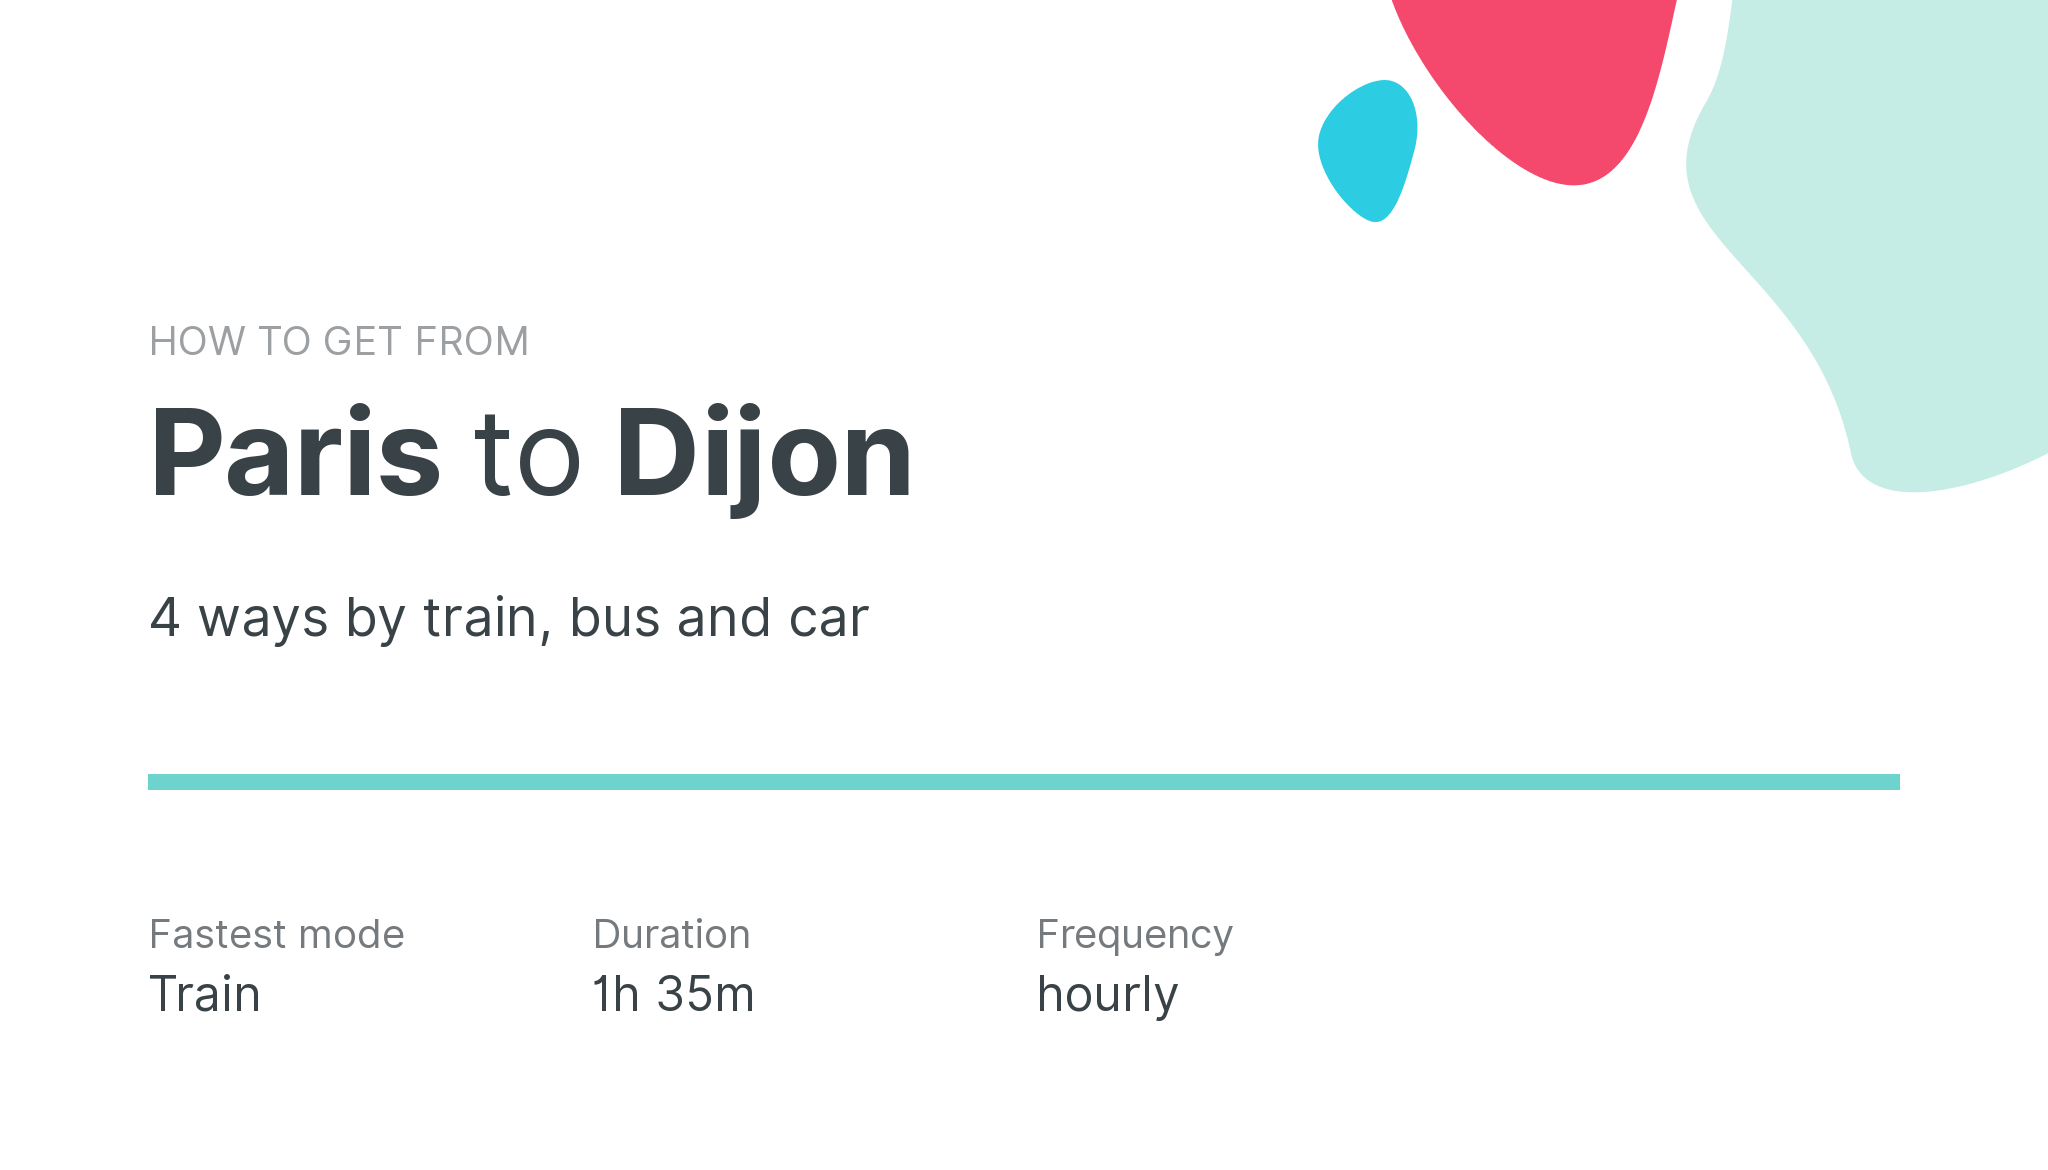 How do I get from Paris to Dijon